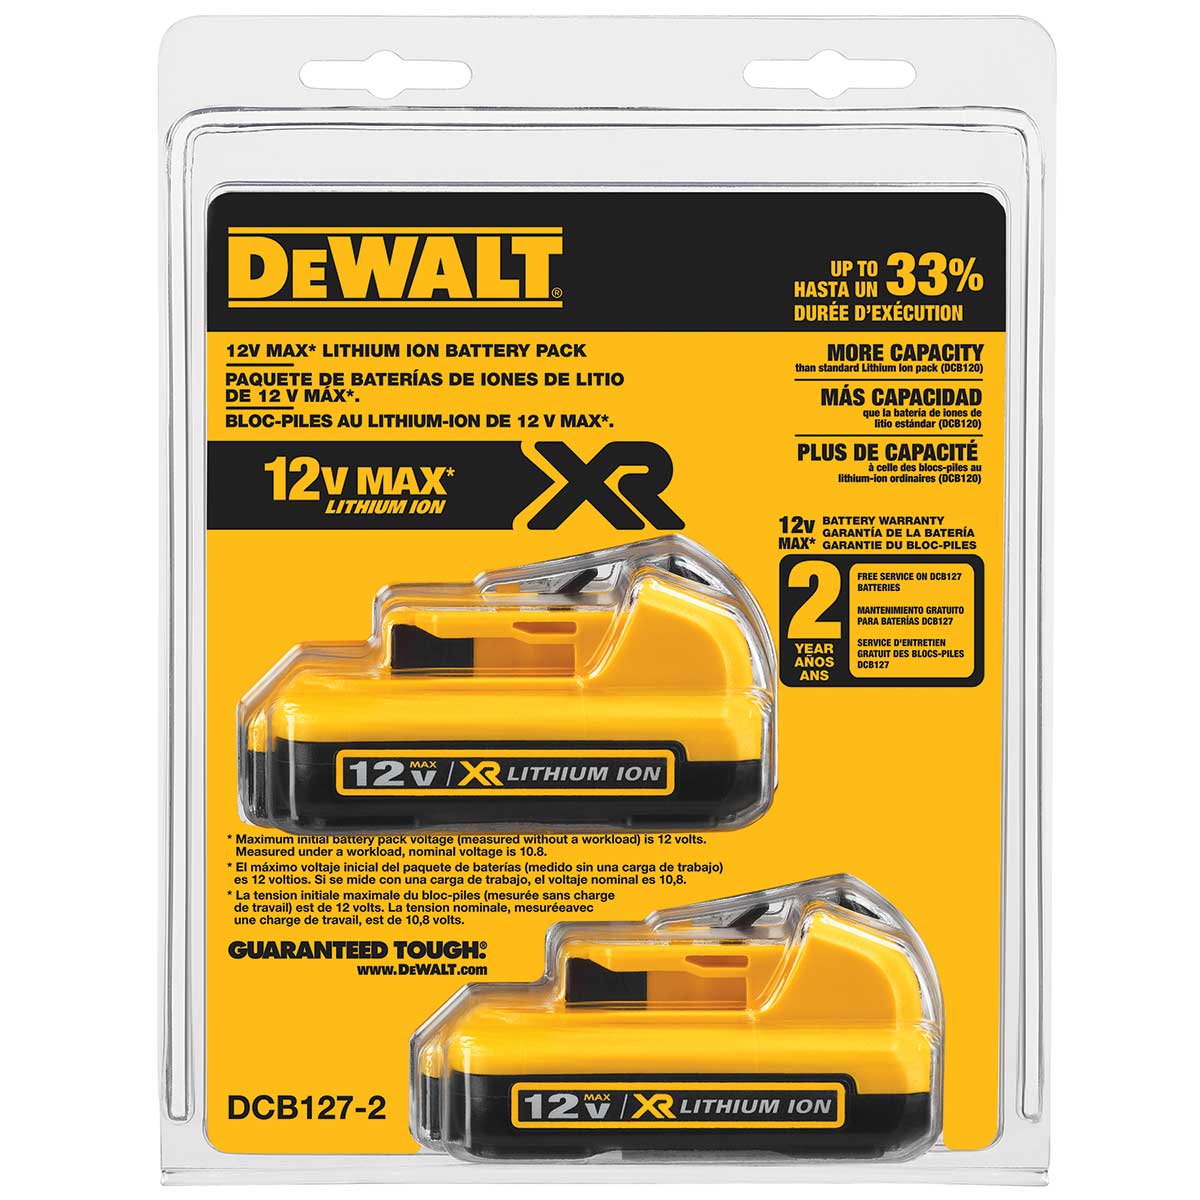 DEWALT 12 V MAX Lithium Ion Battery 2-Pack